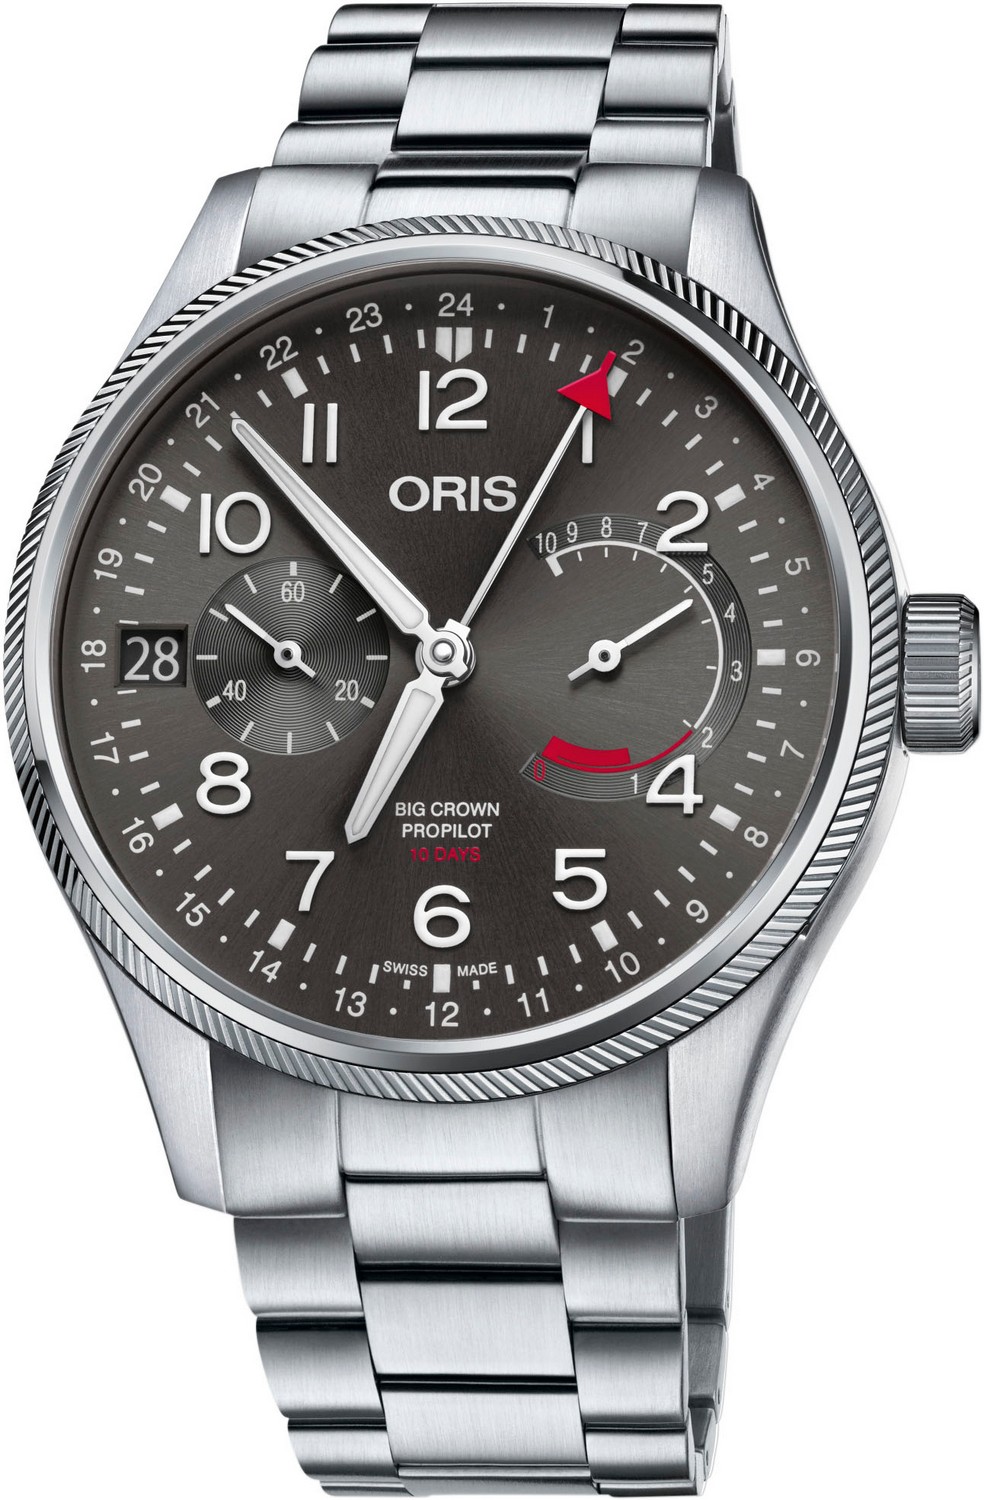 ORIS PROPILOT Мужские швейцарские часы, механический с ручным заводом механизм, сталь, 44 мм